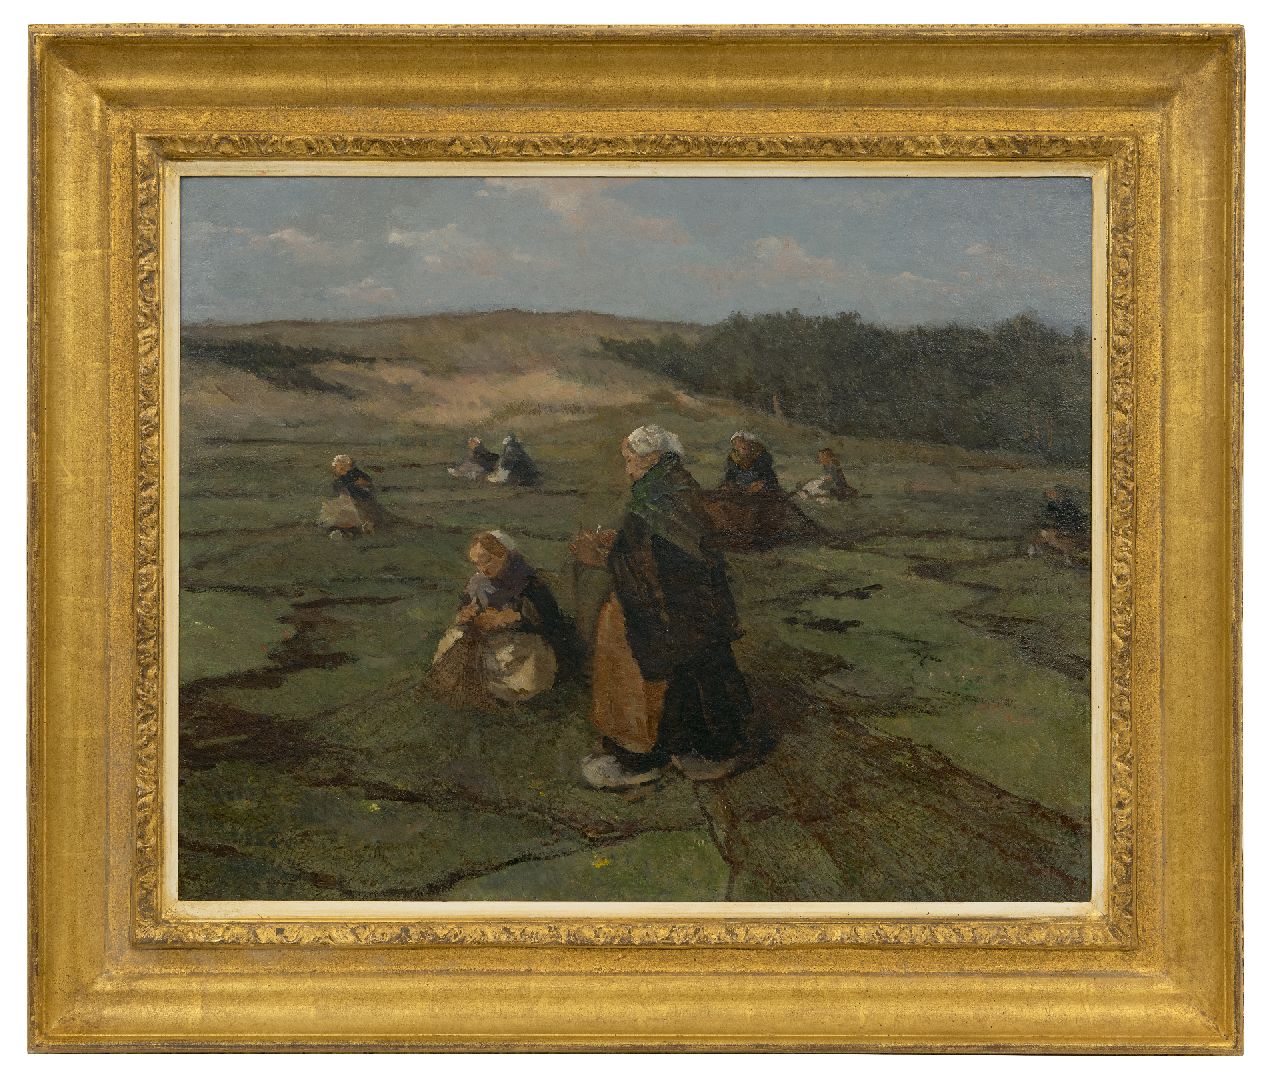 Akkeringa J.E.H.  | 'Johannes Evert' Hendrik Akkeringa | Paintings offered for sale | Mending fishing nets in the dunes, oil on canvas laid down on panel 47.1 x 58.4 cm